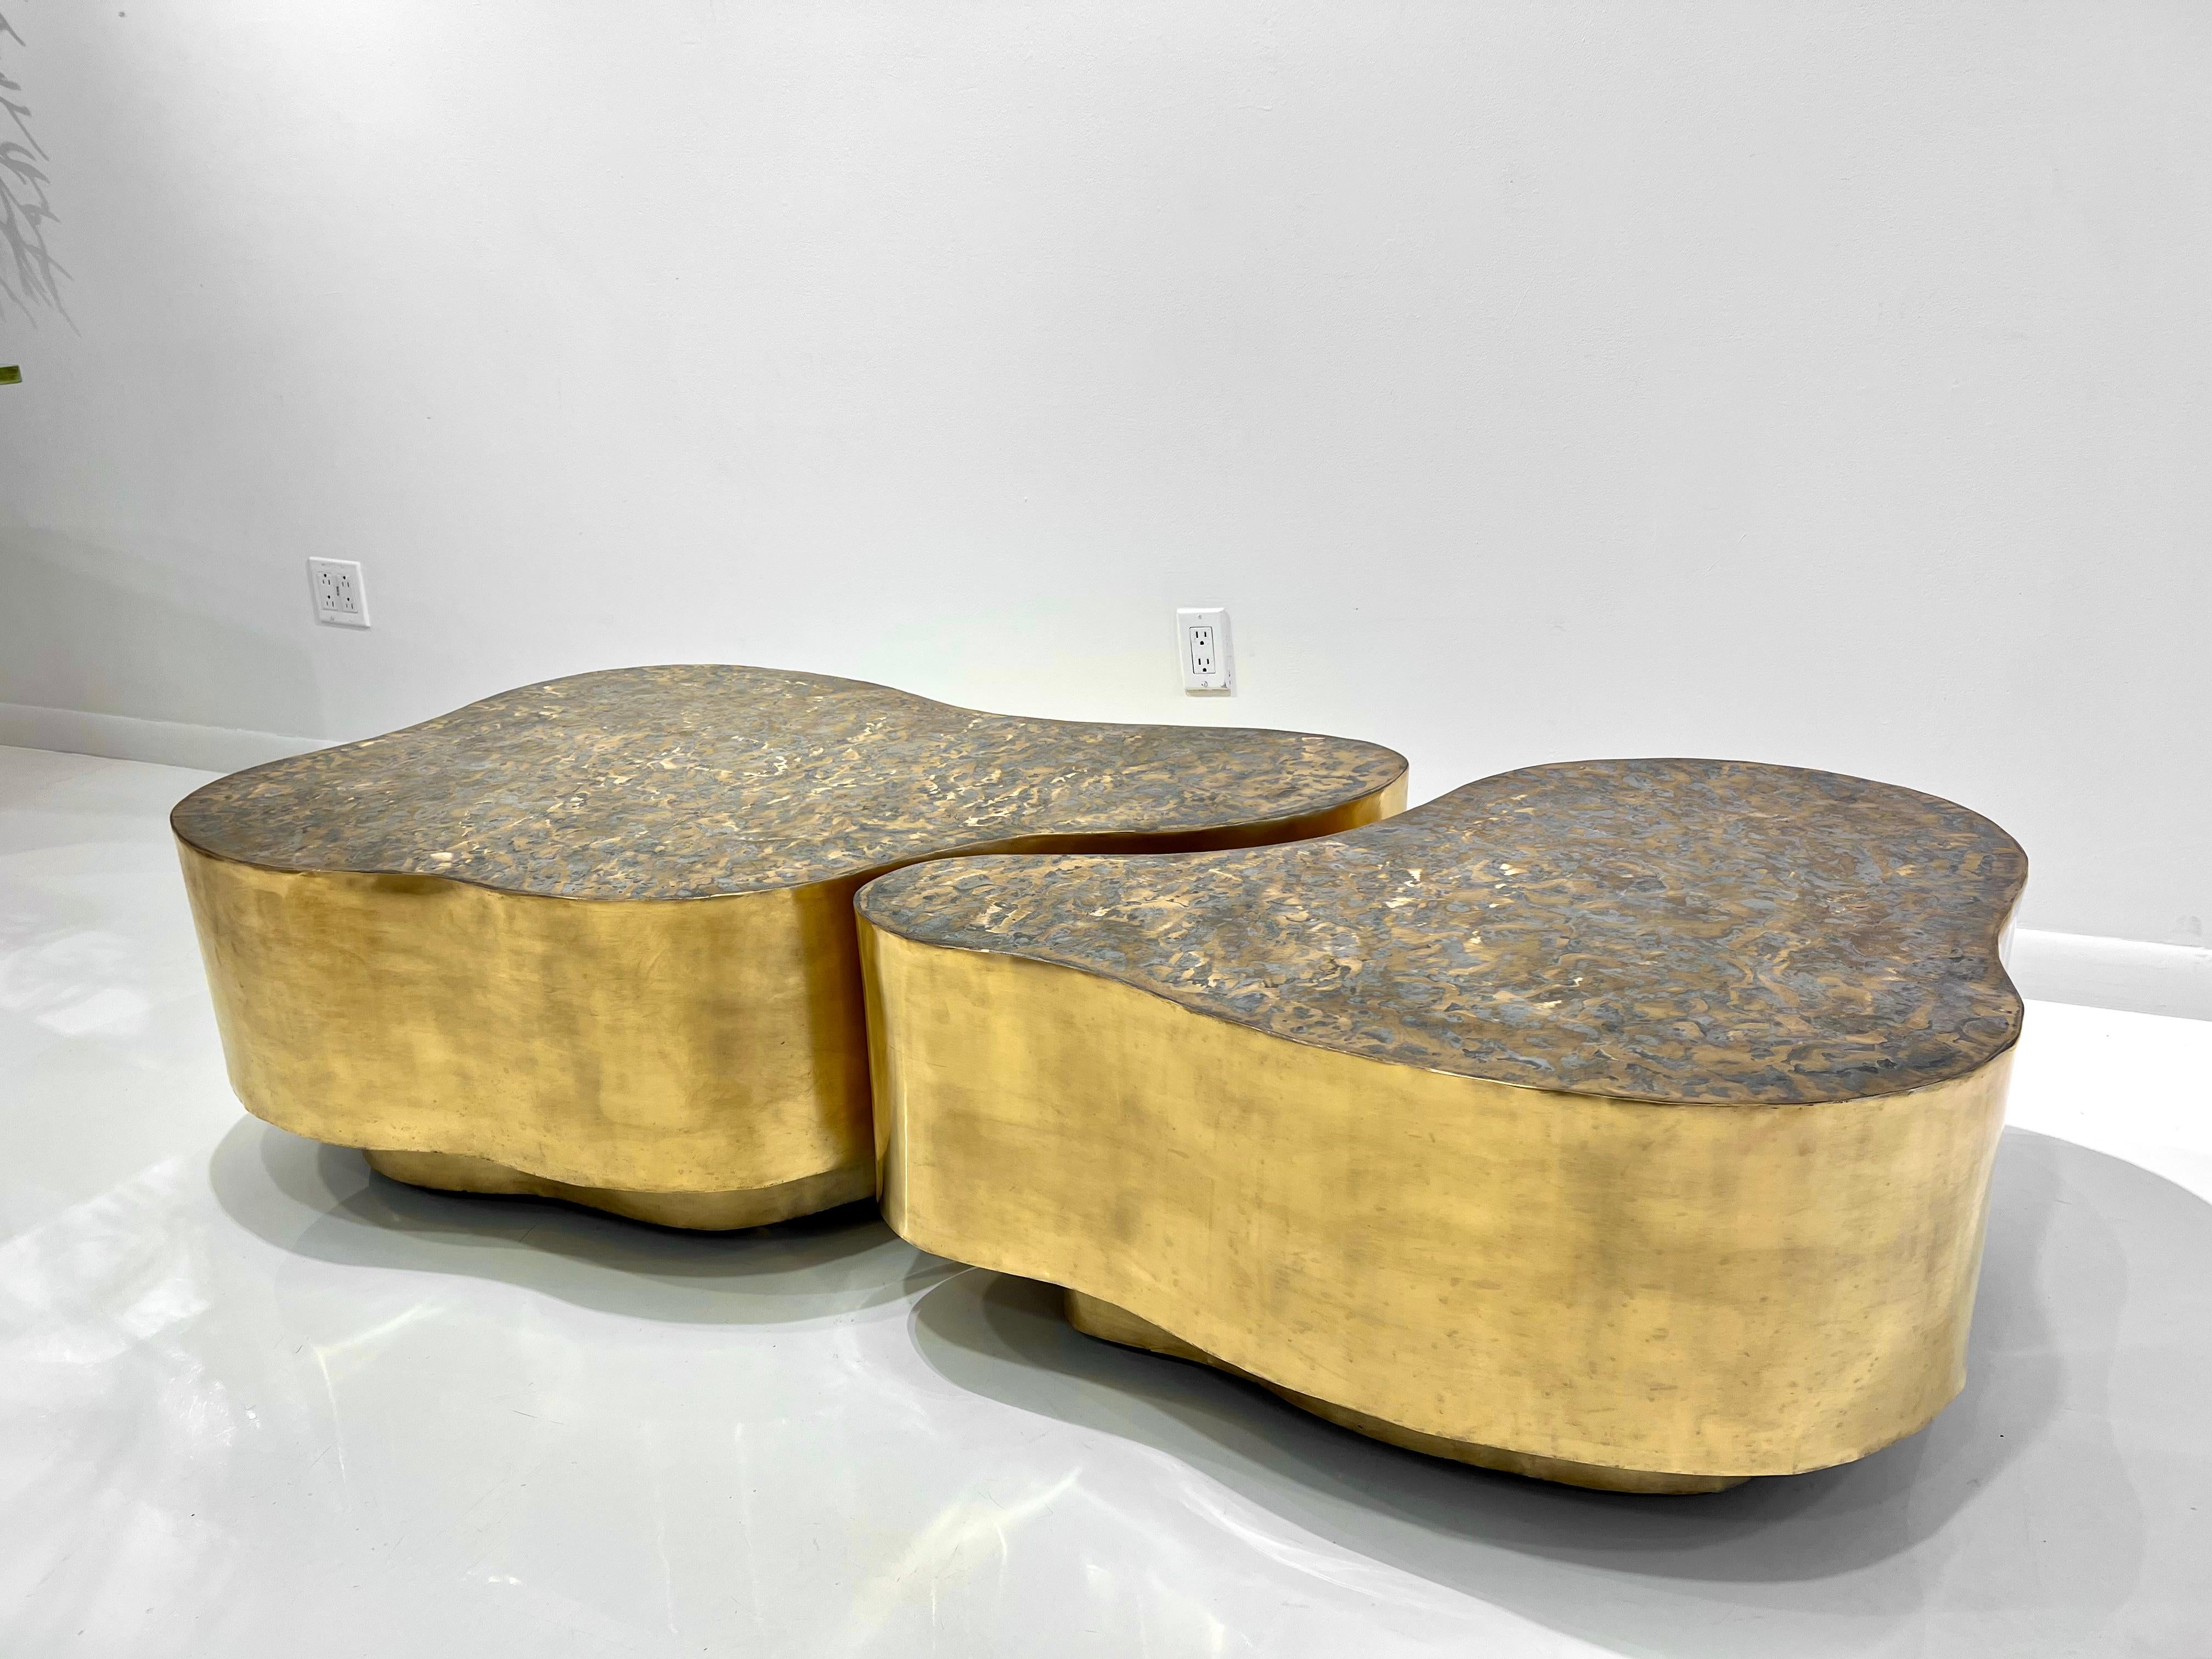 Zwei seltene biomorphe Couchtische aus Bronze von Silas Seandel aus den 1960er Jahren, patiniert mit gebürsteter, strukturierter Platte.
Zweiteiliger Couchtisch. Jedes Teil steht auf versteckten Rollen und kann leicht bewegt und getrennt werden.